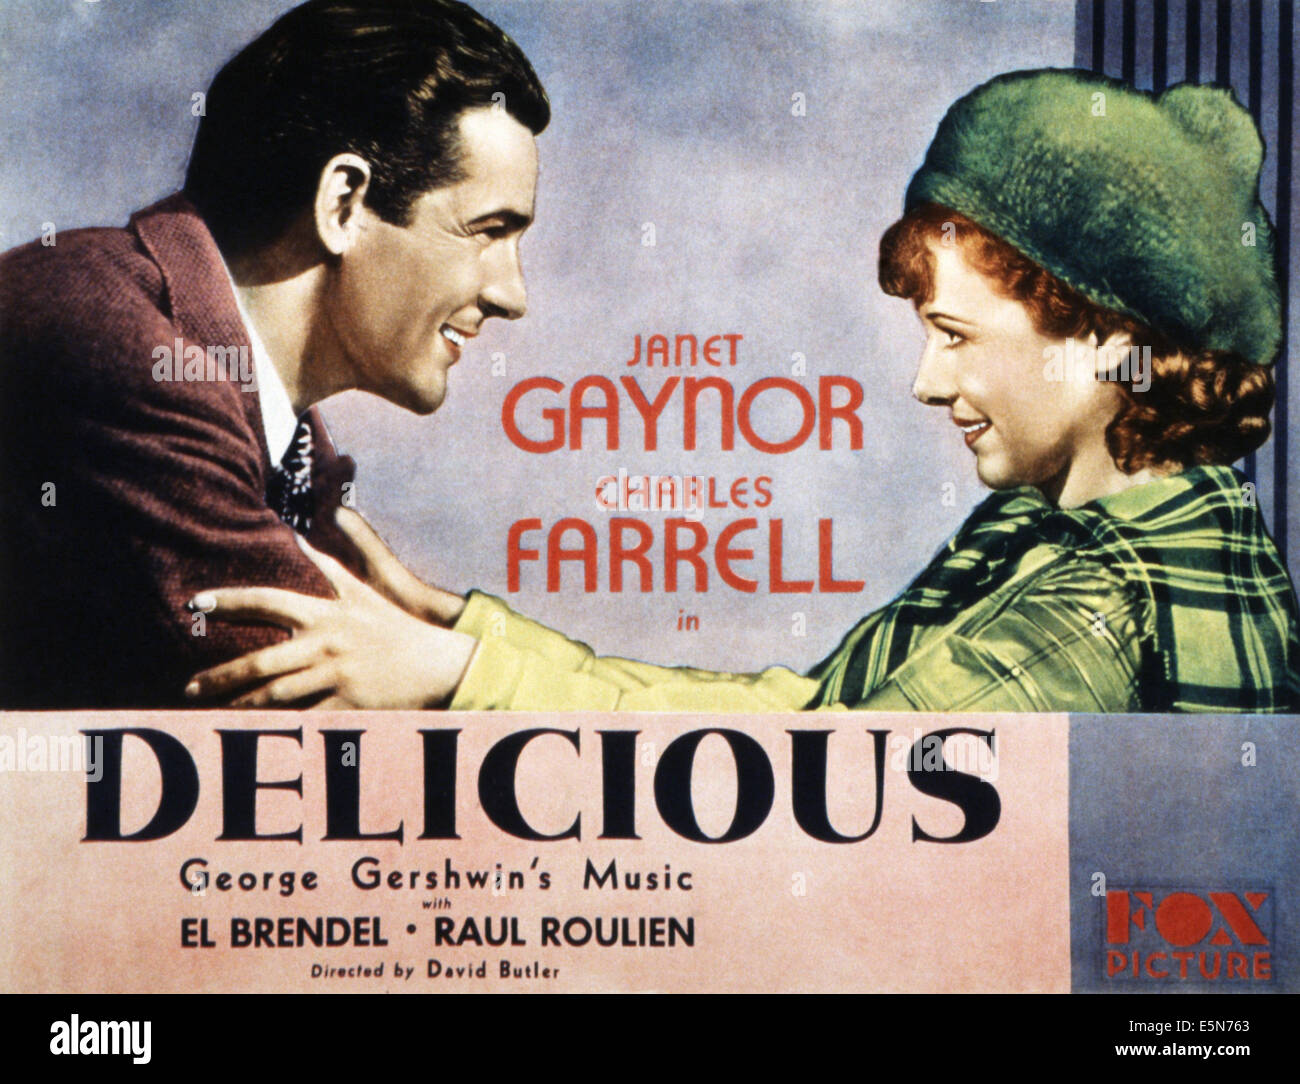 Sehr lecker, Charles Farrell, Janet Gaynor, 1931, TM und Copyright © 20. Century Fox Film Corp. Alle Rechte vorbehalten / Courtesy: Stockfoto